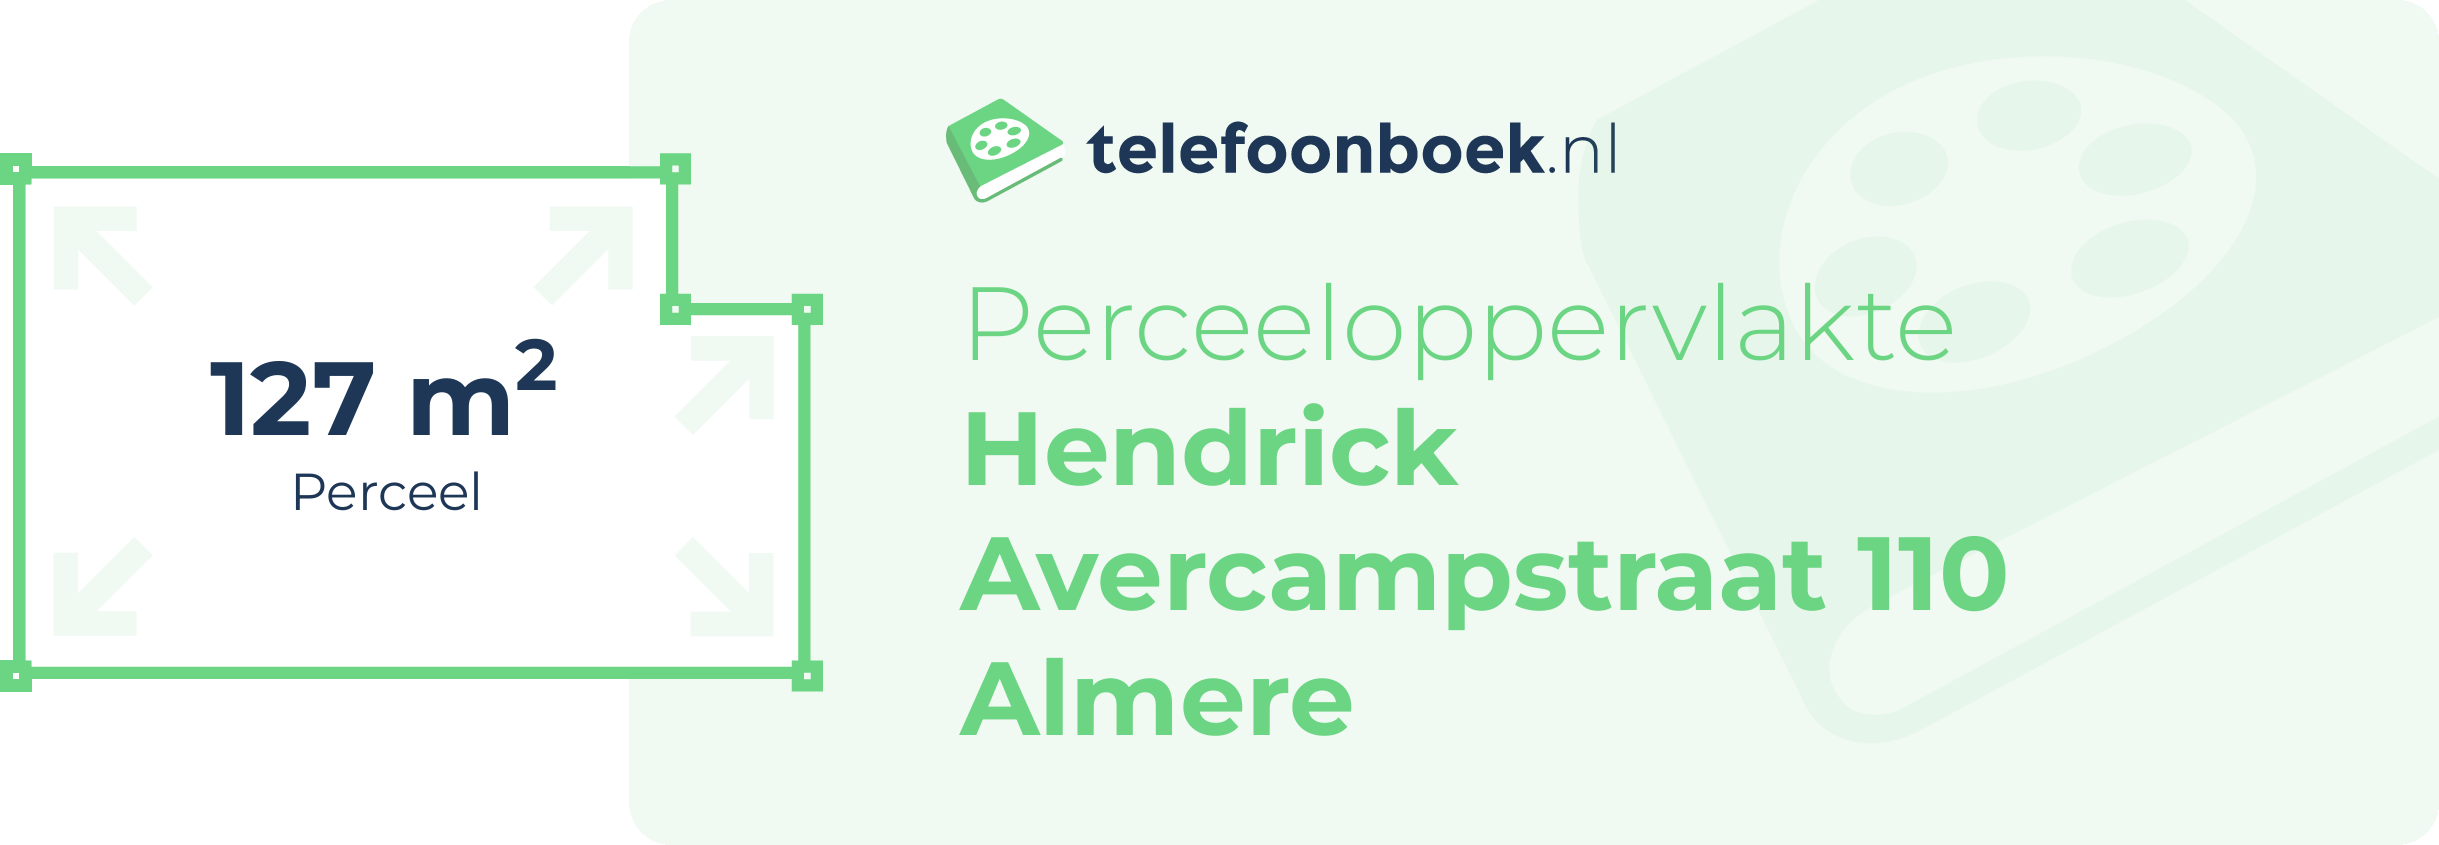 Perceeloppervlakte Hendrick Avercampstraat 110 Almere